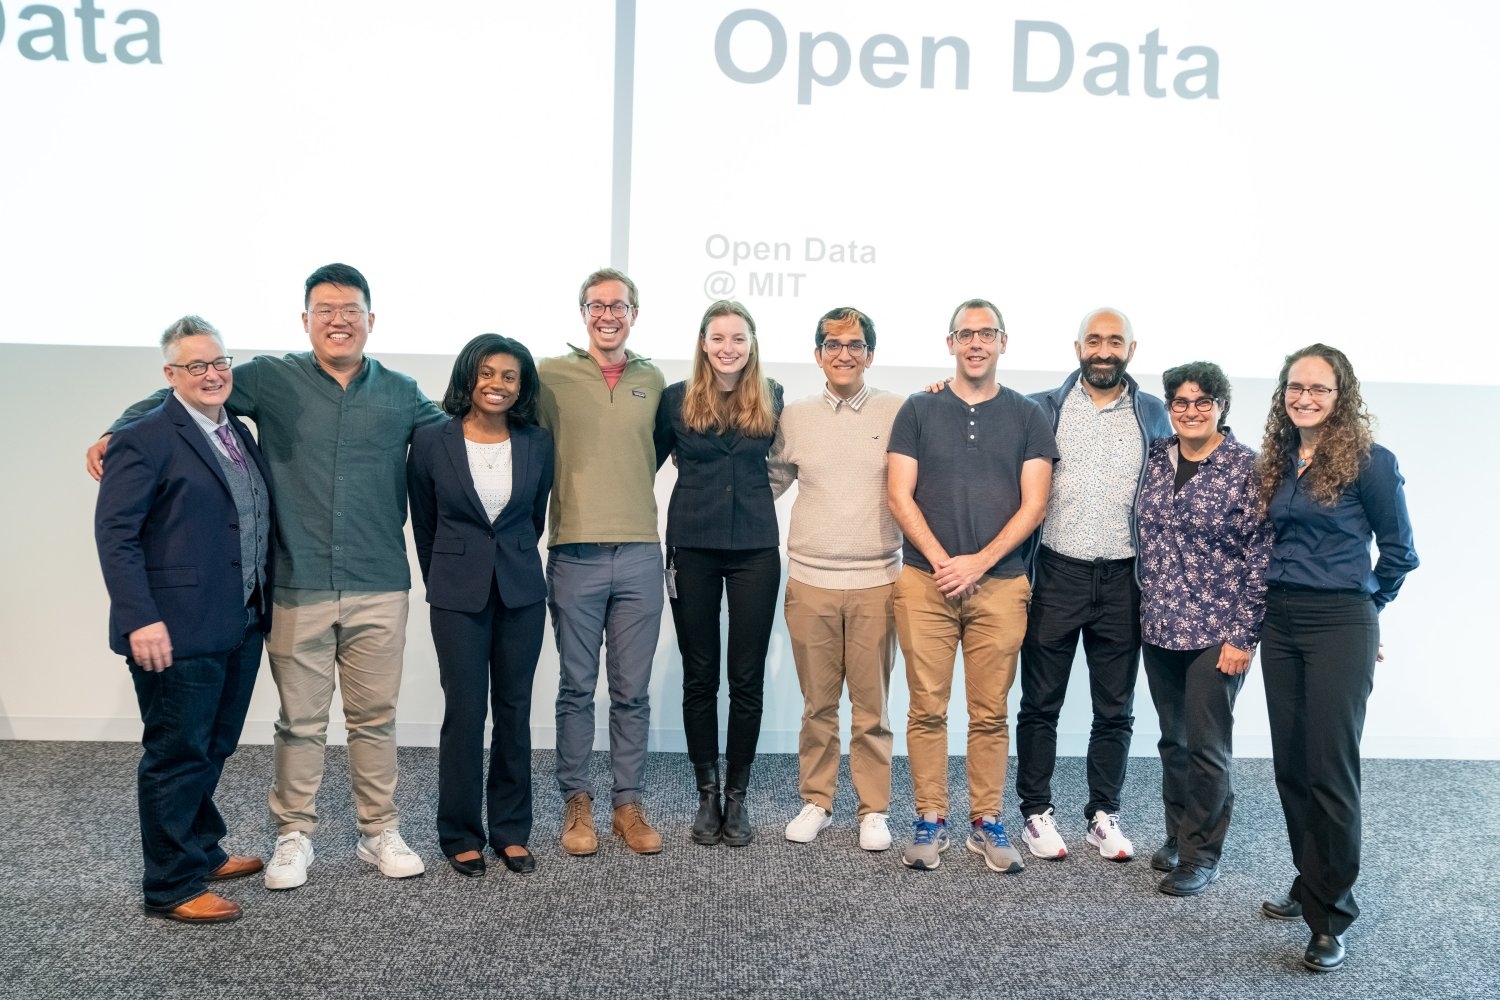 Celebrating open data